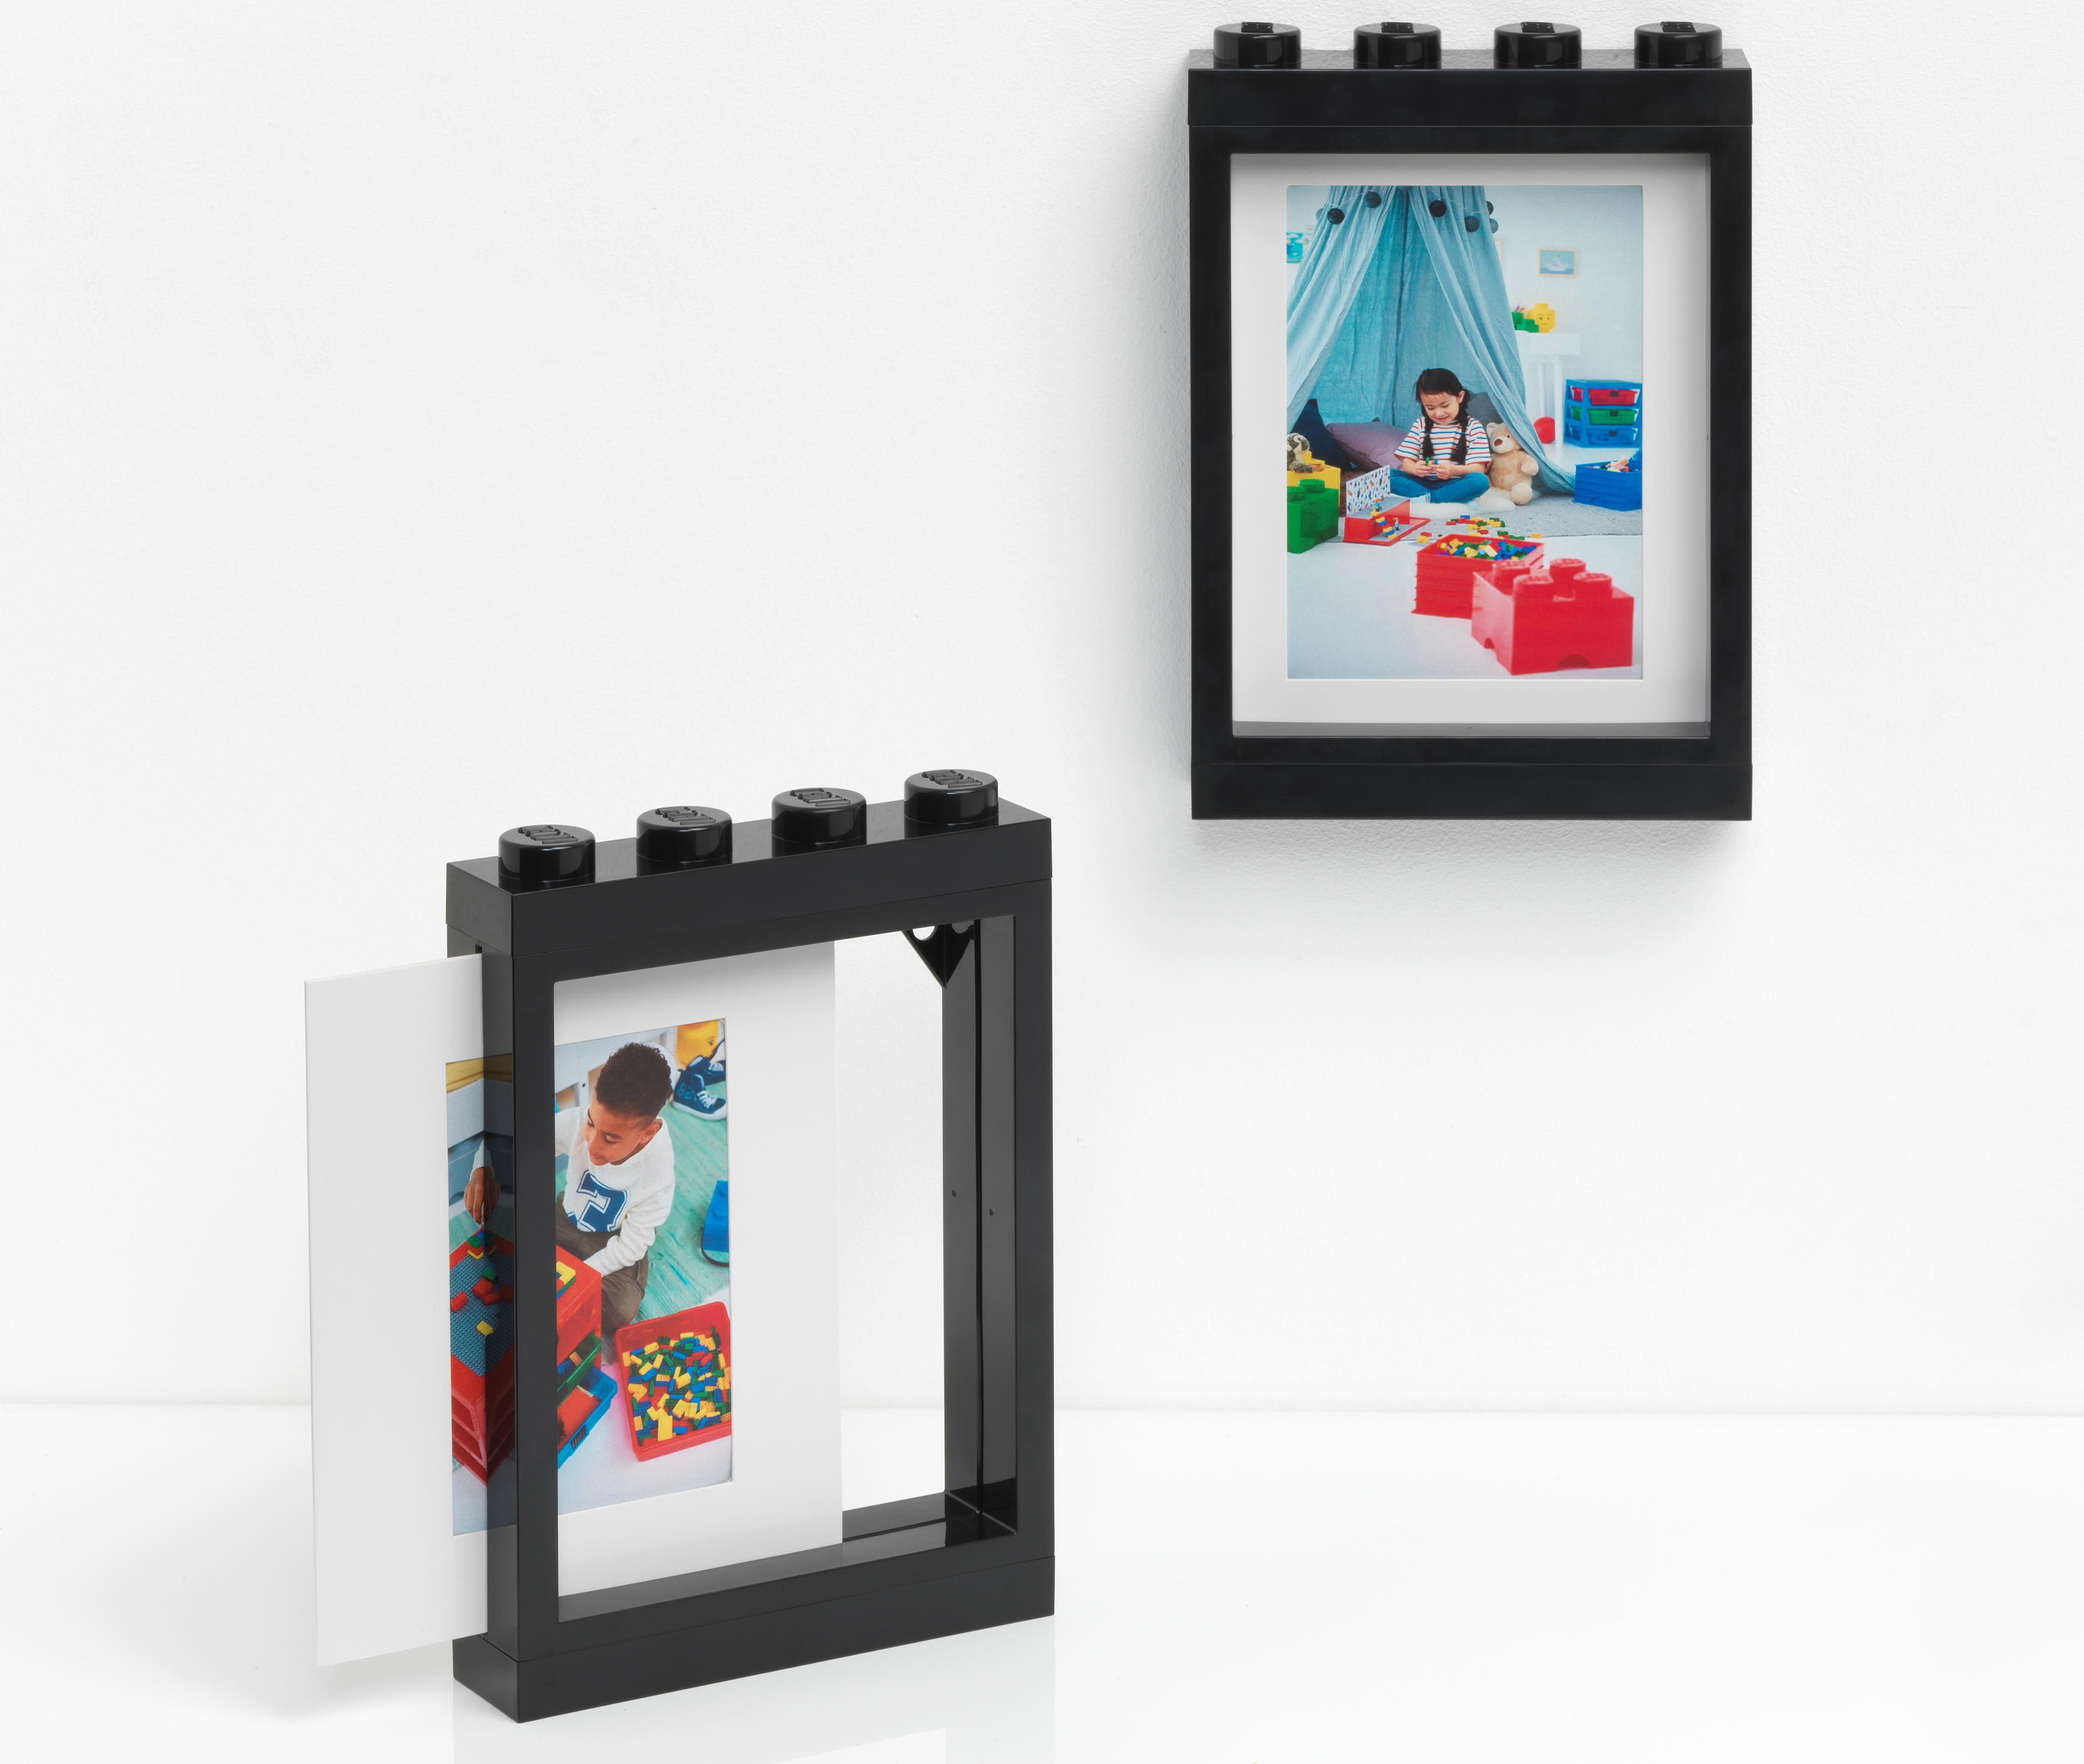 Cadre briques Lego Mécanique - burette à huile - Les Portraits de Felie